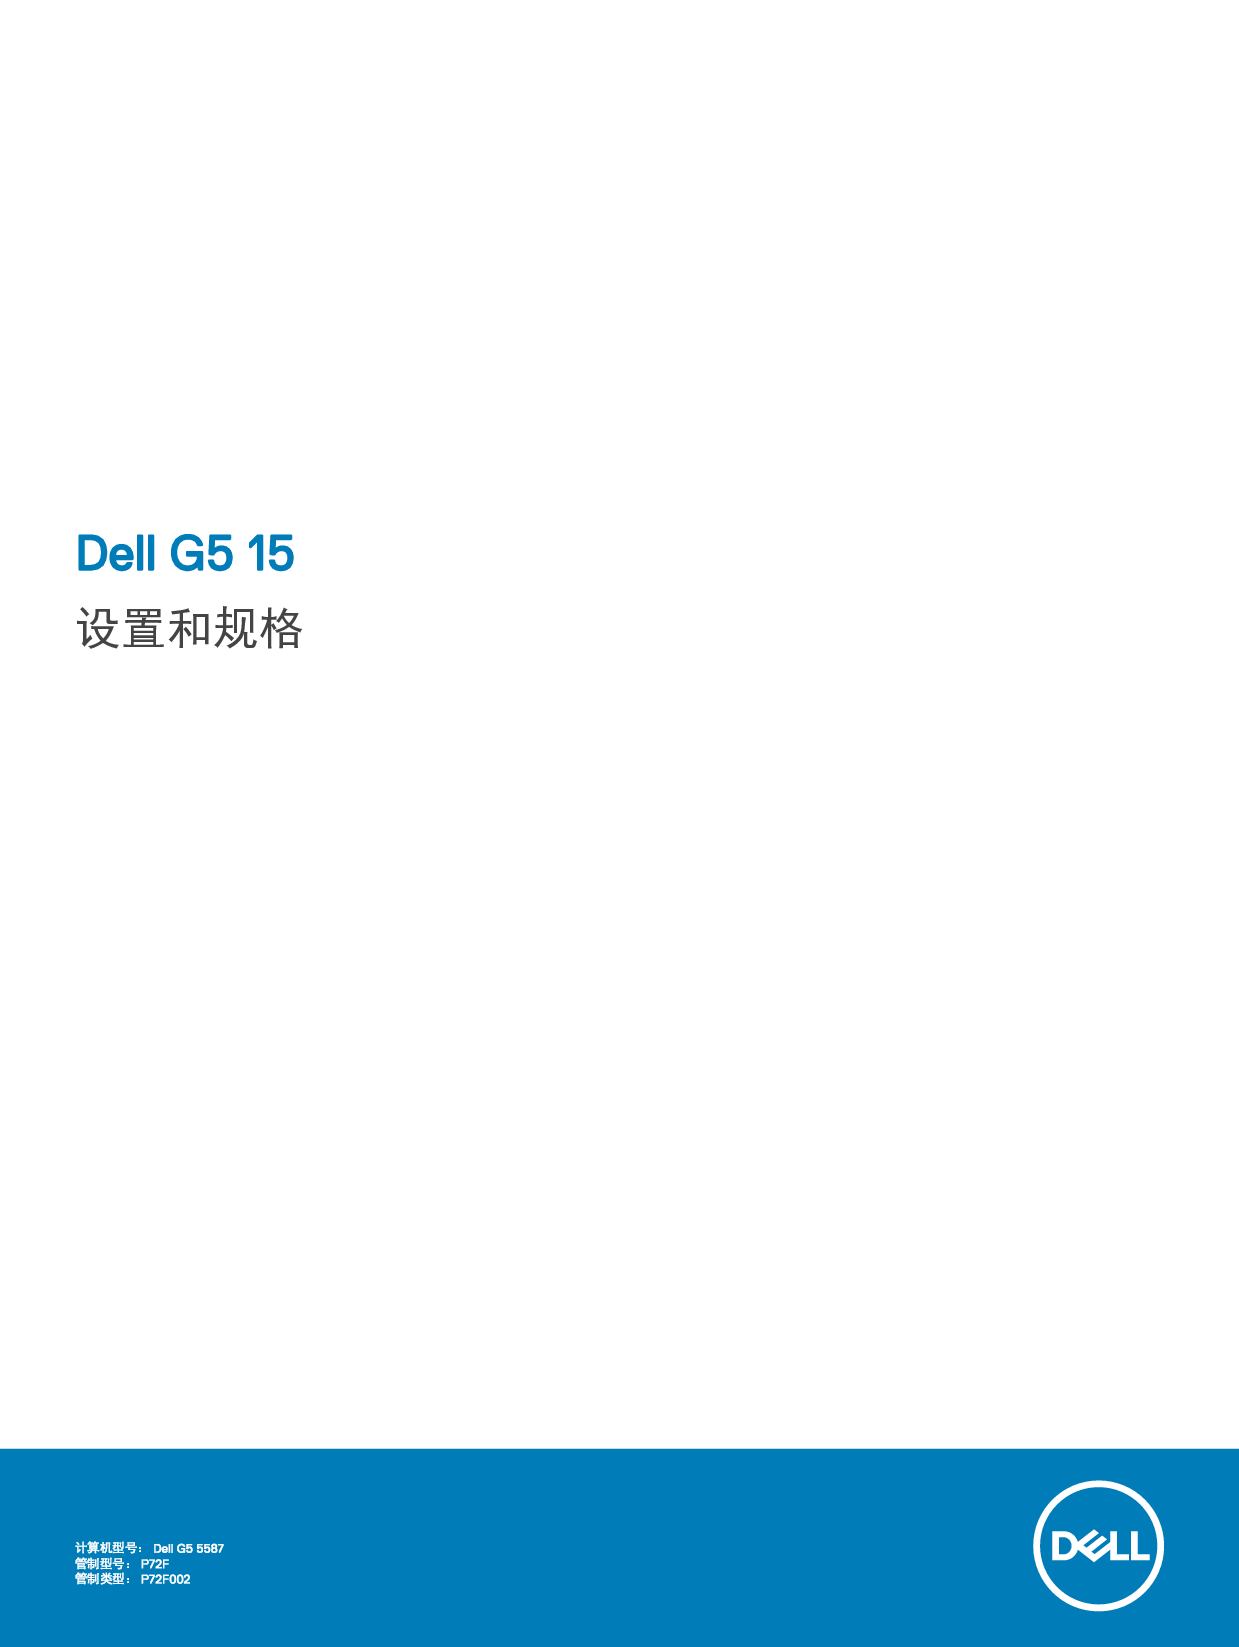 戴尔 Dell G5 15 5587 设置指南 封面